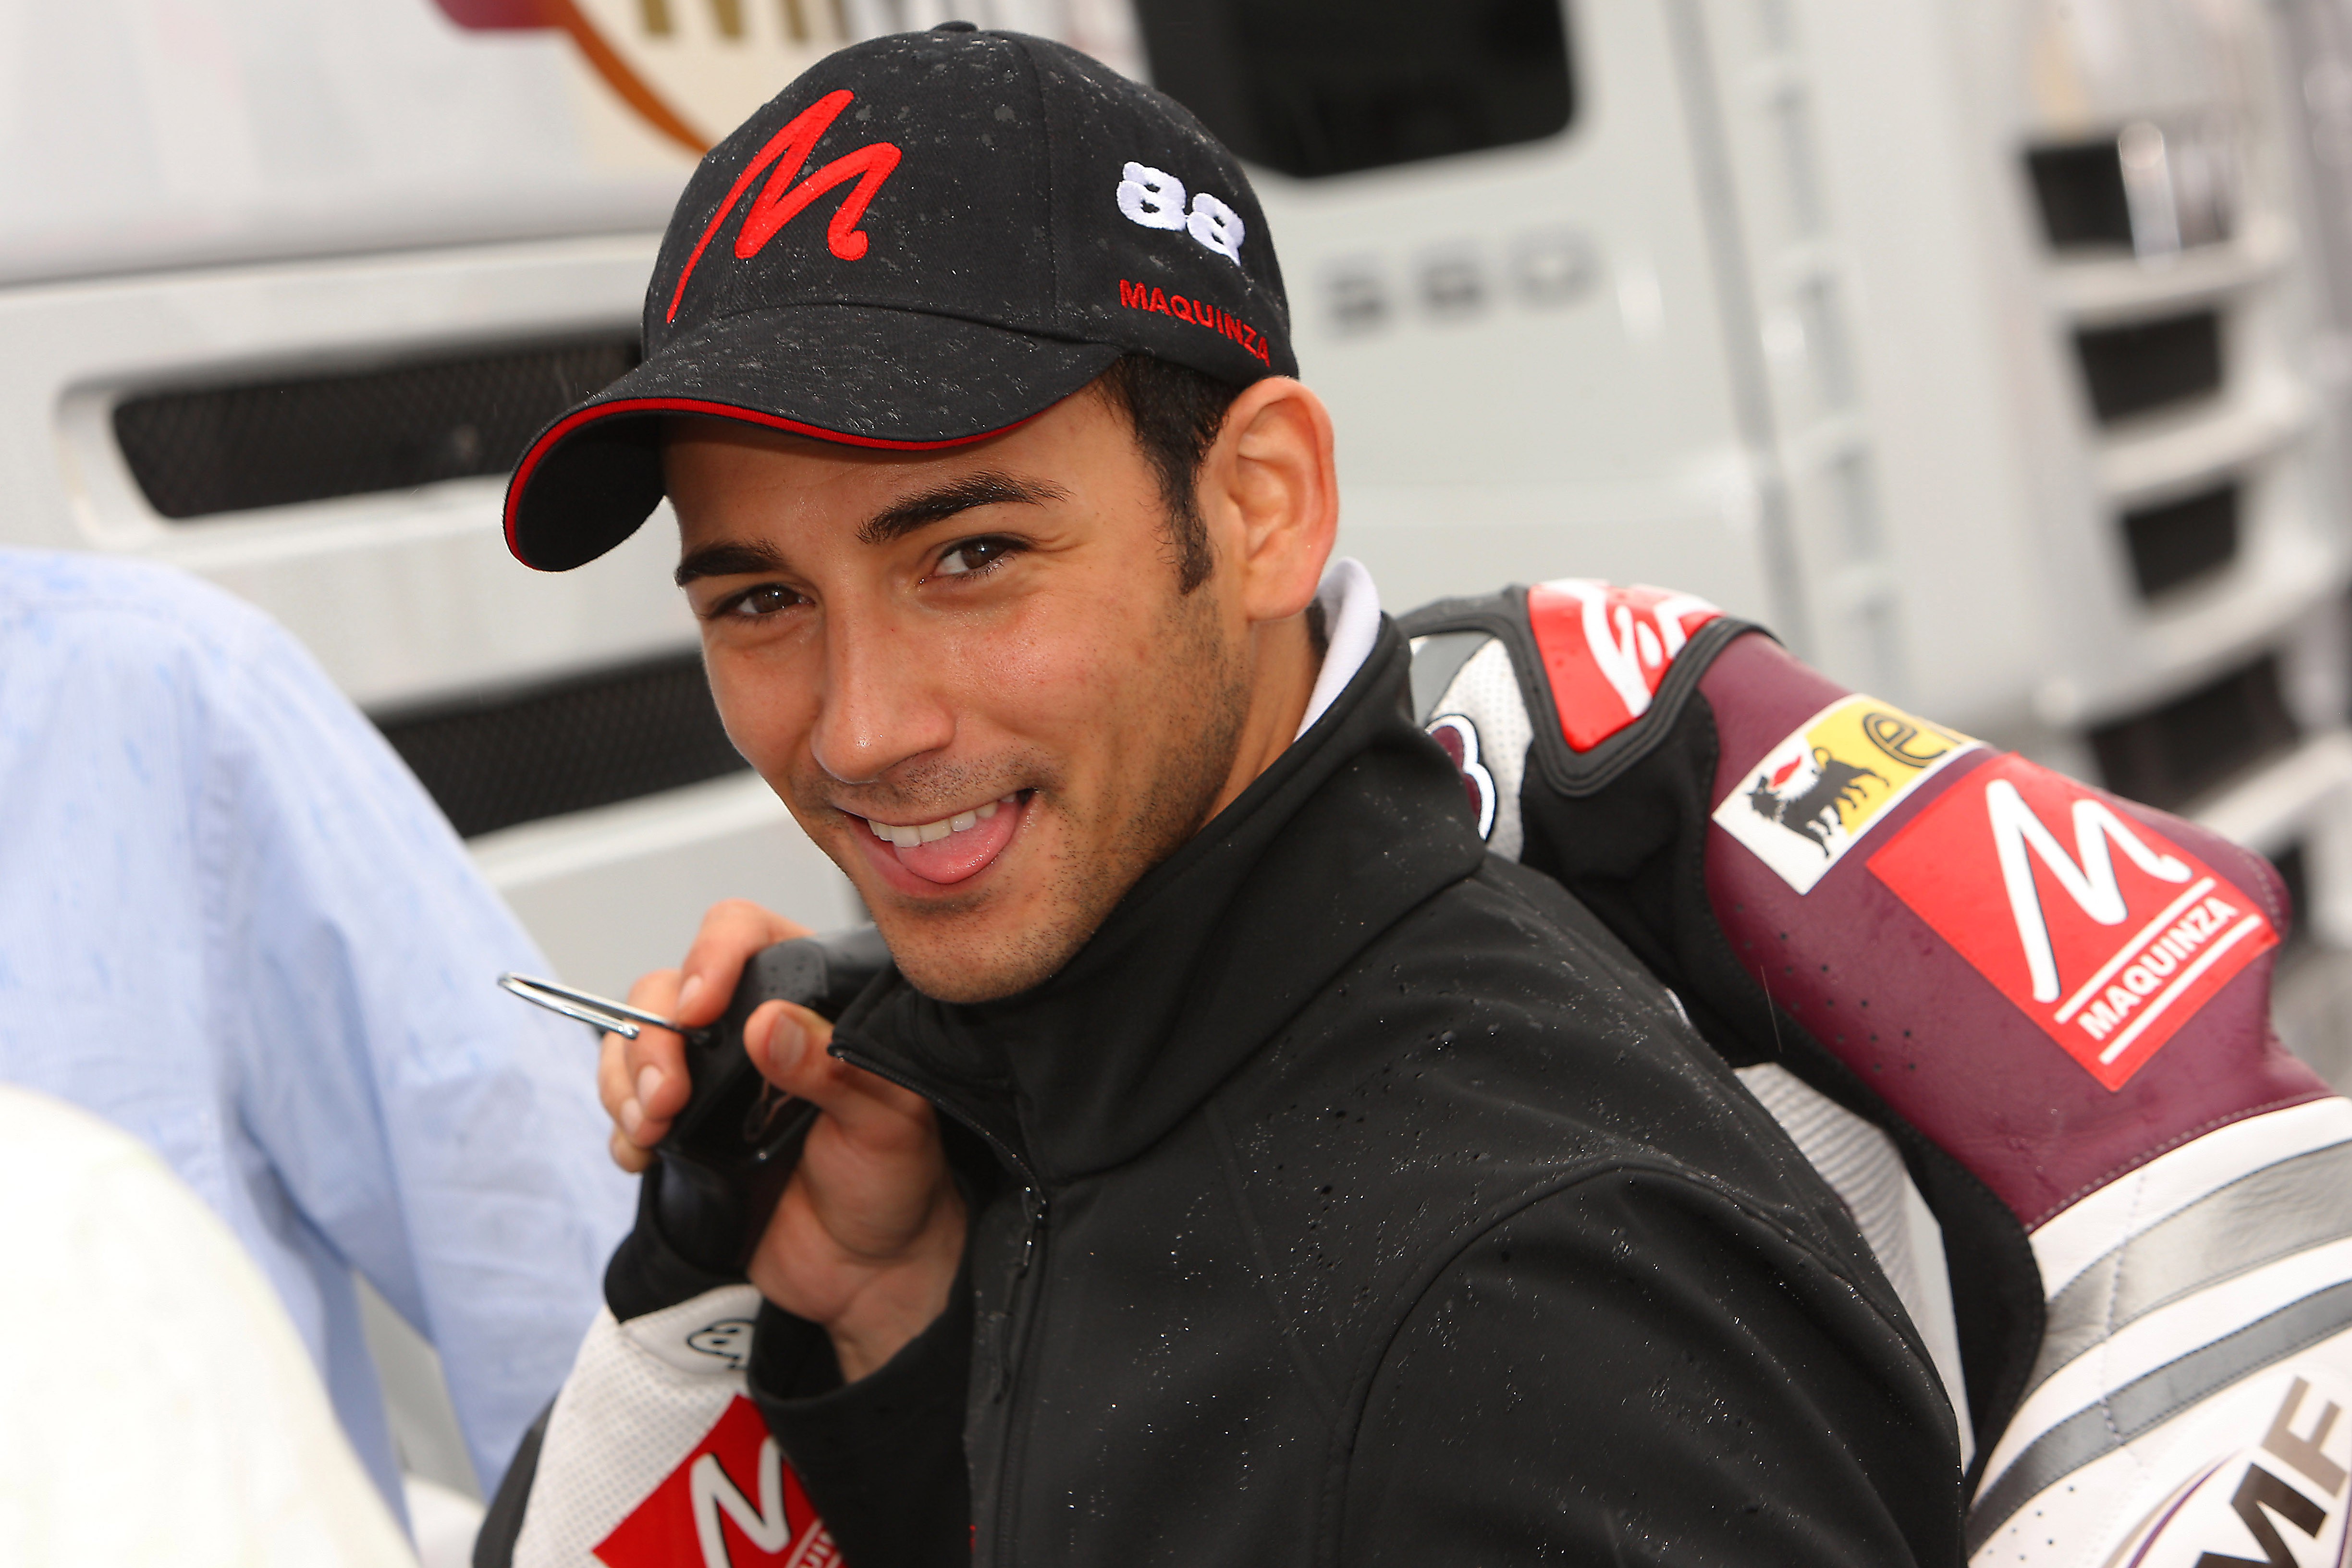 Ricky Cardús sustituye a Mariñelarena en el Tech3 Racing Moto2